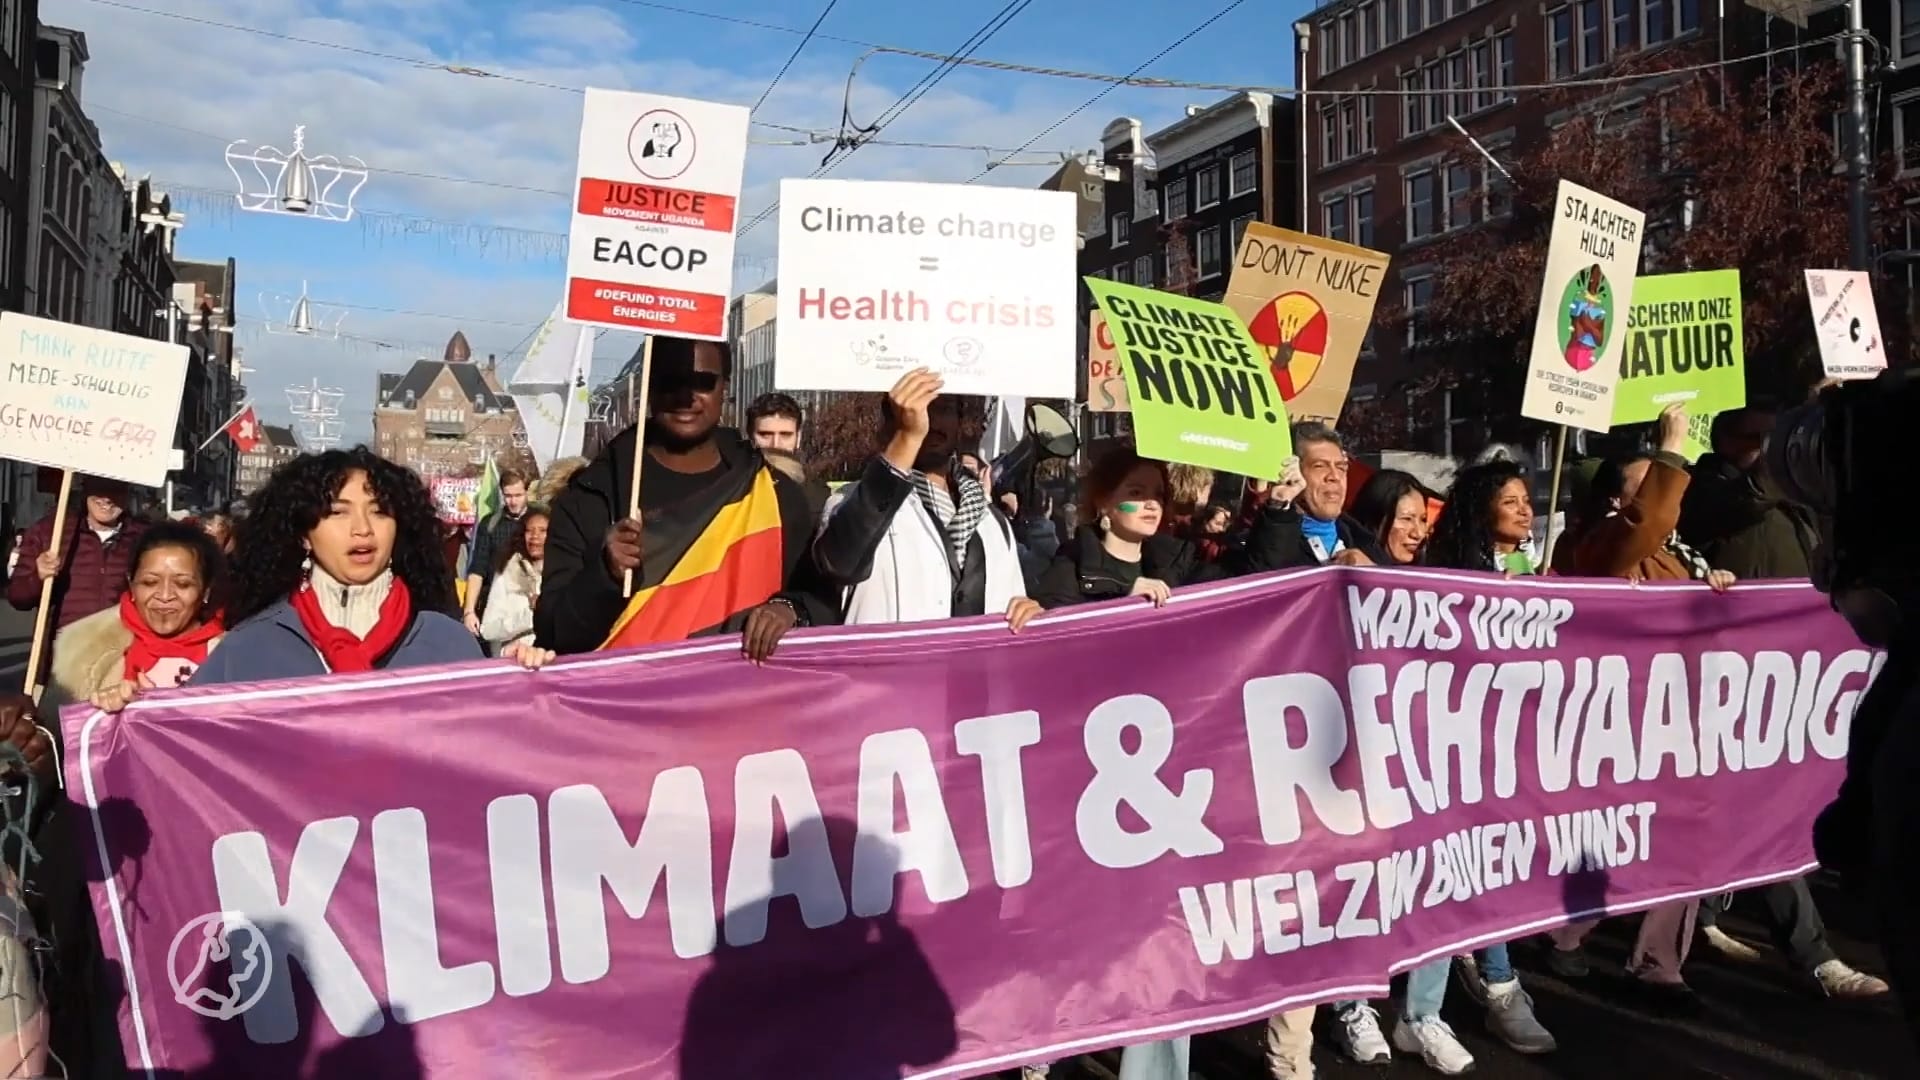 Tienduizenden demonstranten lopen mars door Amsterdam